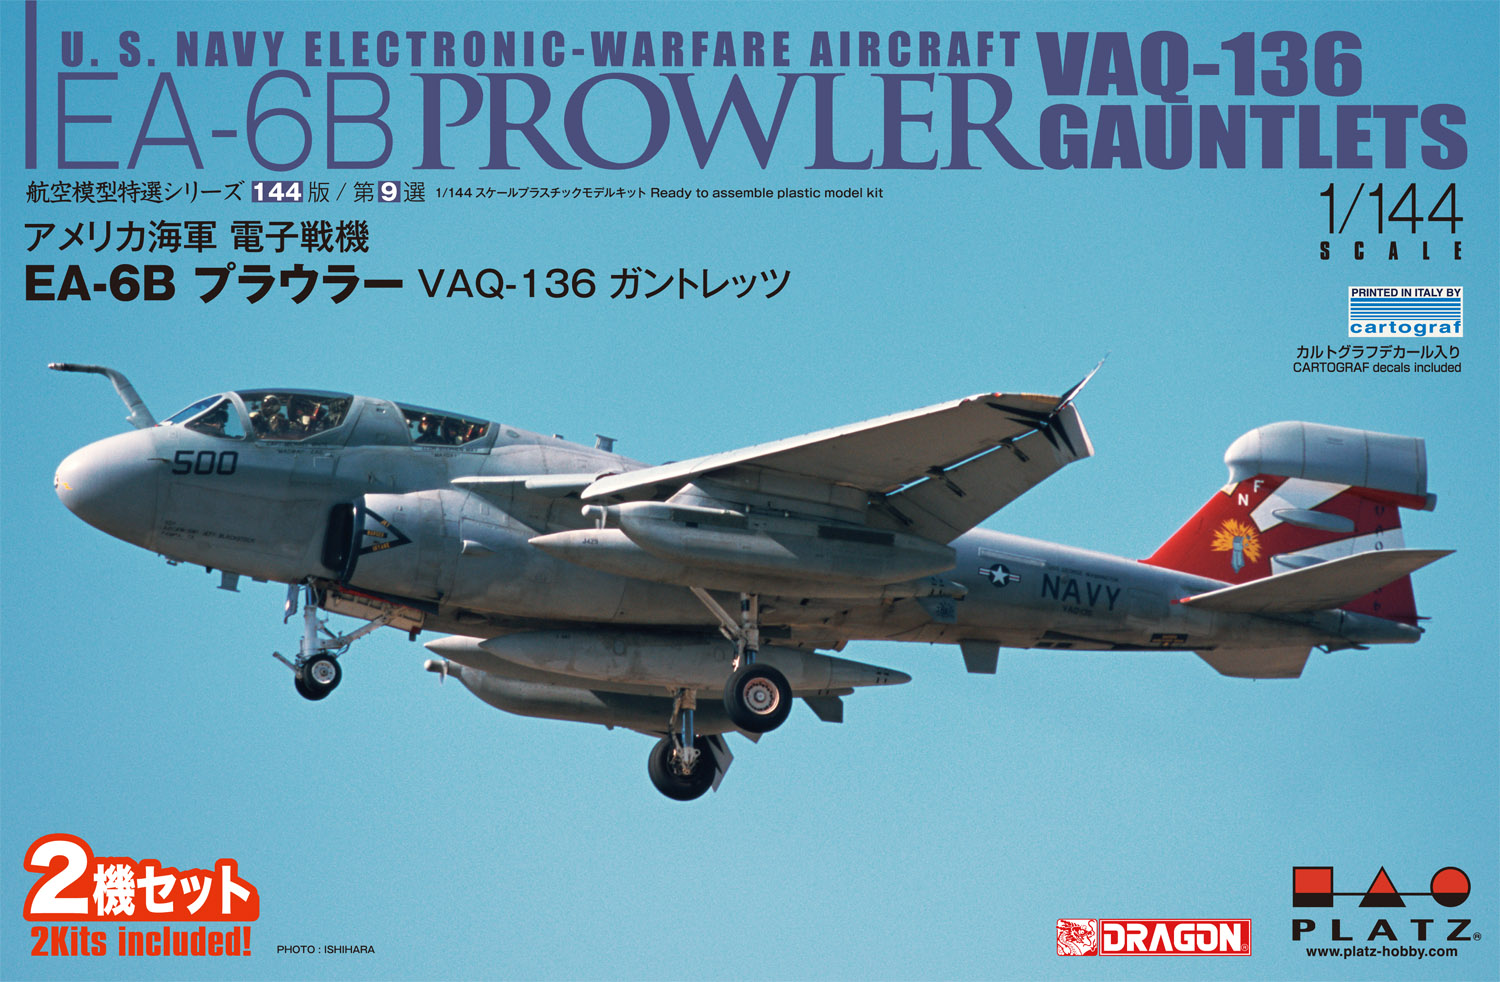 1/144 アメリカ海軍 電子戦機 EA-6B プラウラー VAQ-136 ガントレッツ